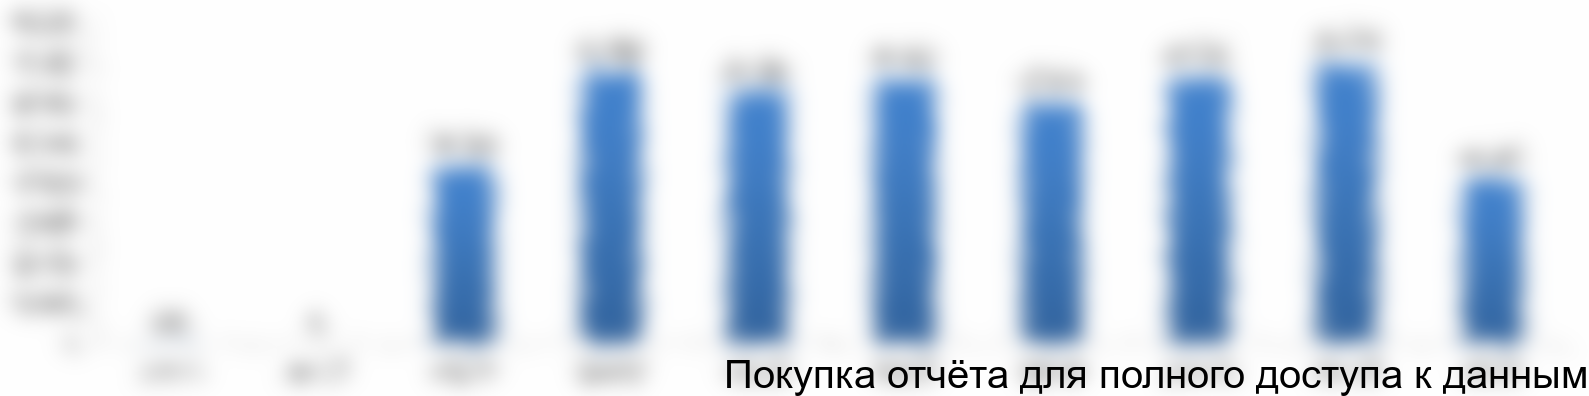 Рисунок 4.2 График финансирования проекта, тыс. руб.